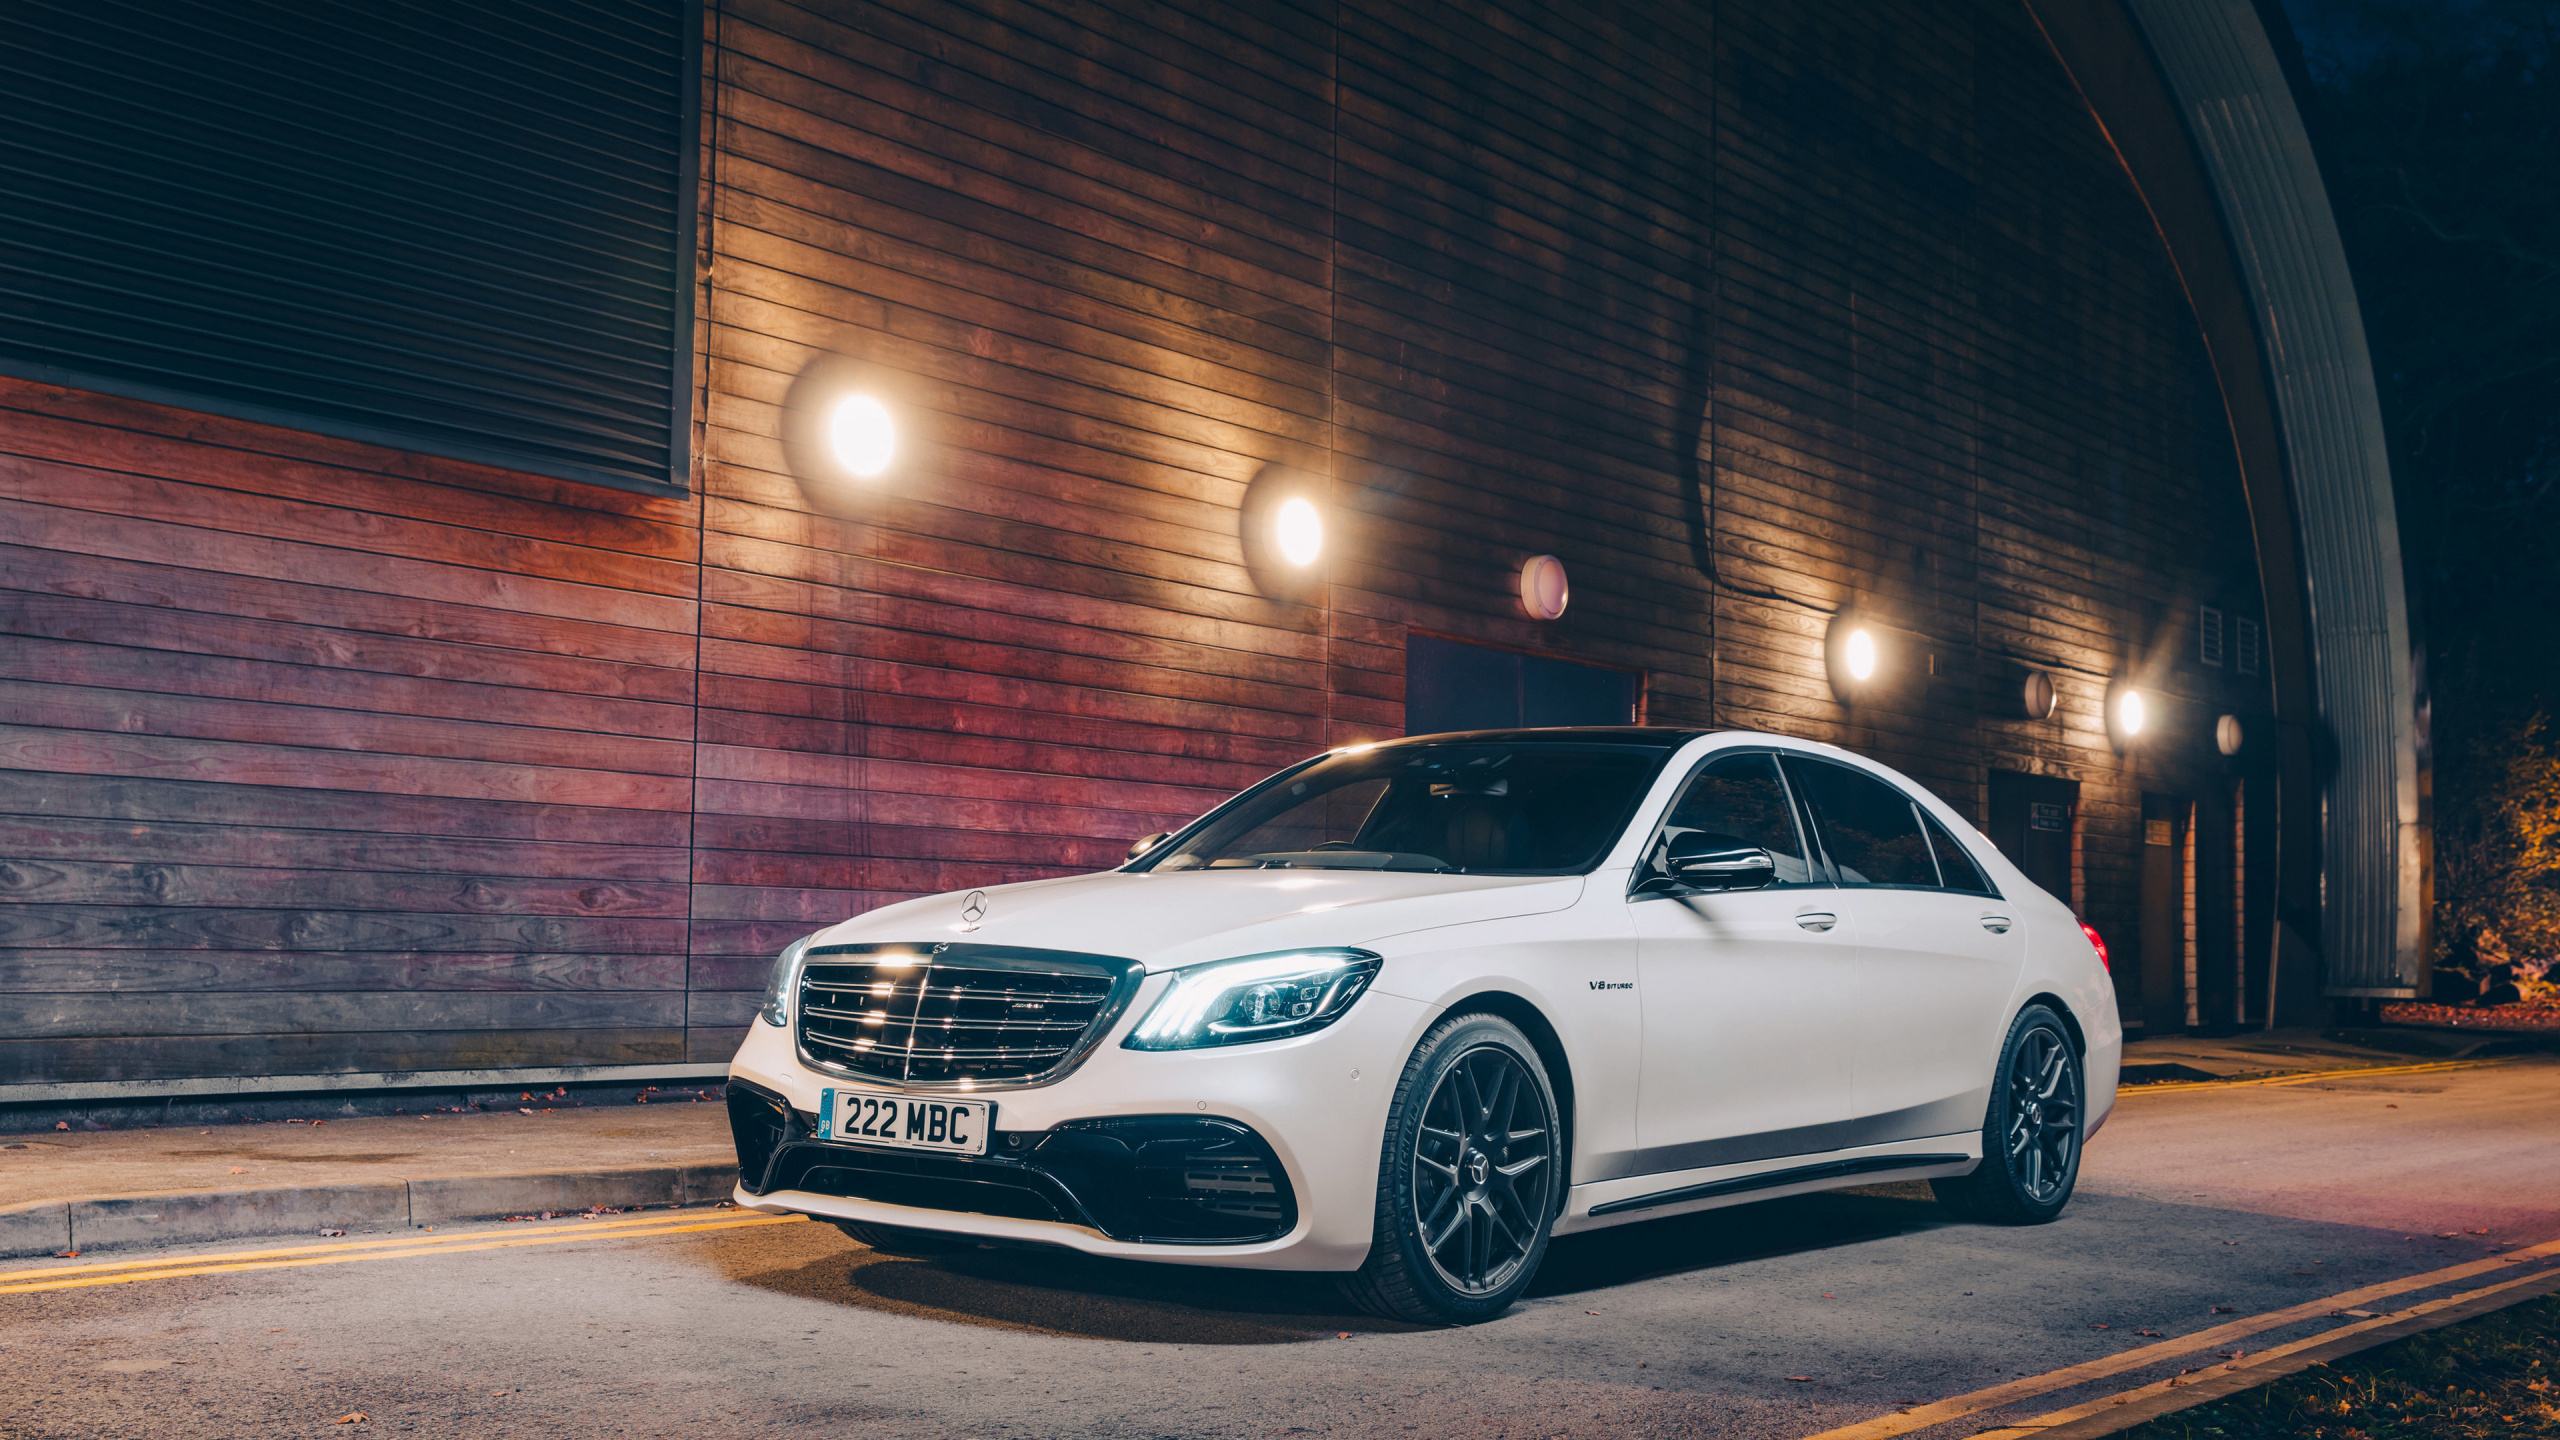 Mercedes Benz Coupe Blanco Estacionado en el Estacionamiento Durante la Noche. Wallpaper in 2560x1440 Resolution